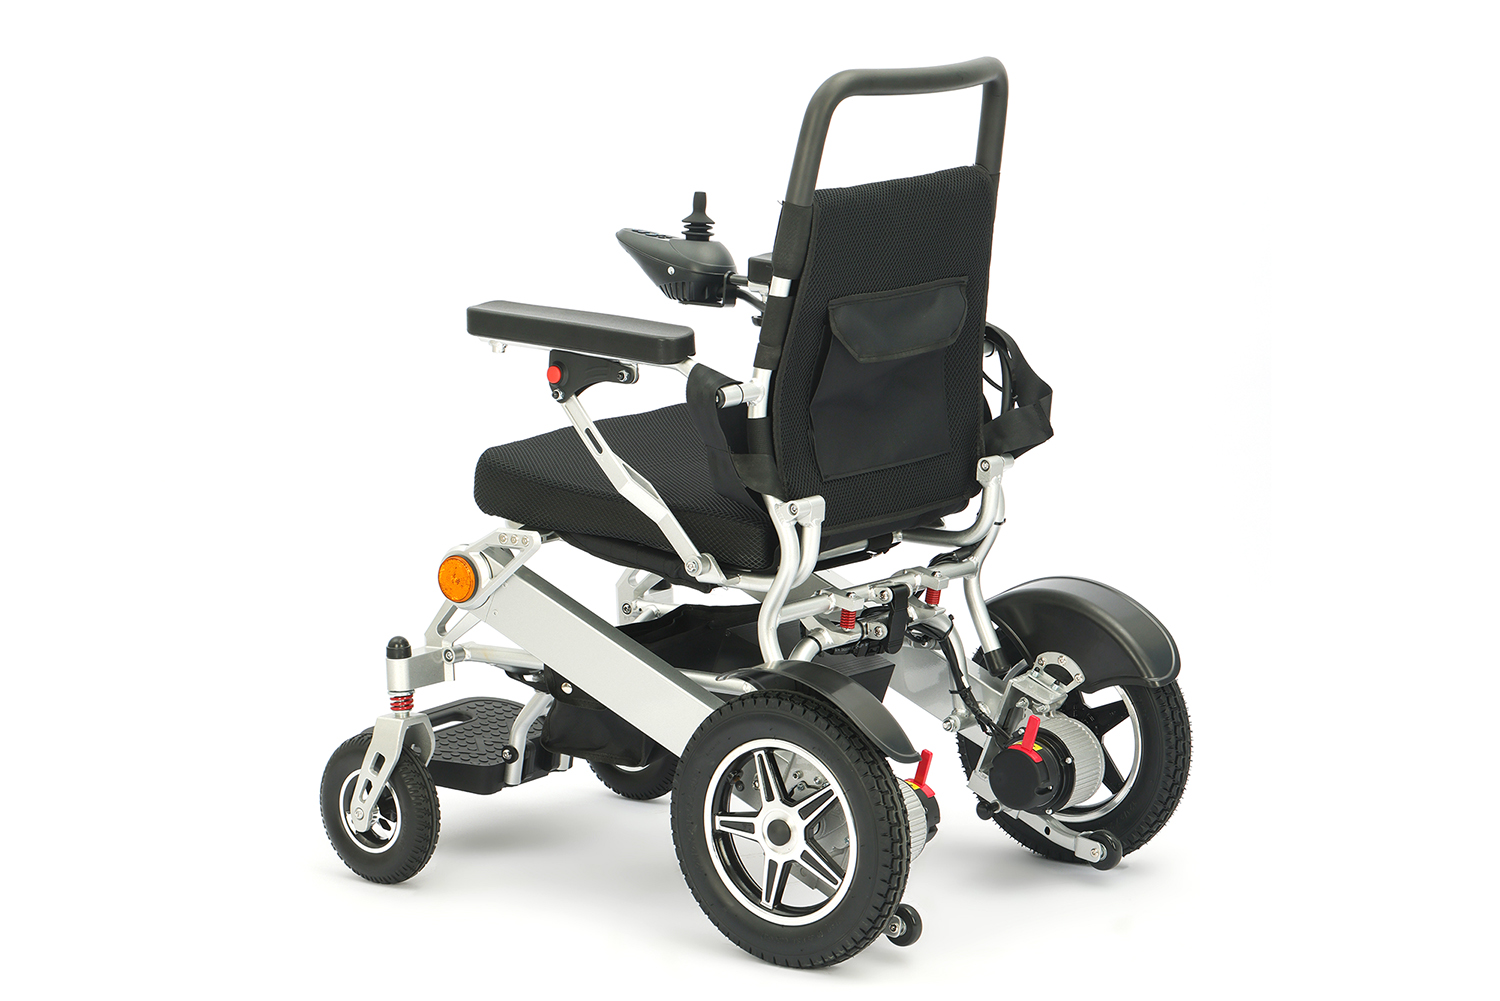 Iko Evolution yePortable inopeta yemagetsi wiricheya-Sumo uye Zvakanakira zvePortable Folding Electric Wheelchair